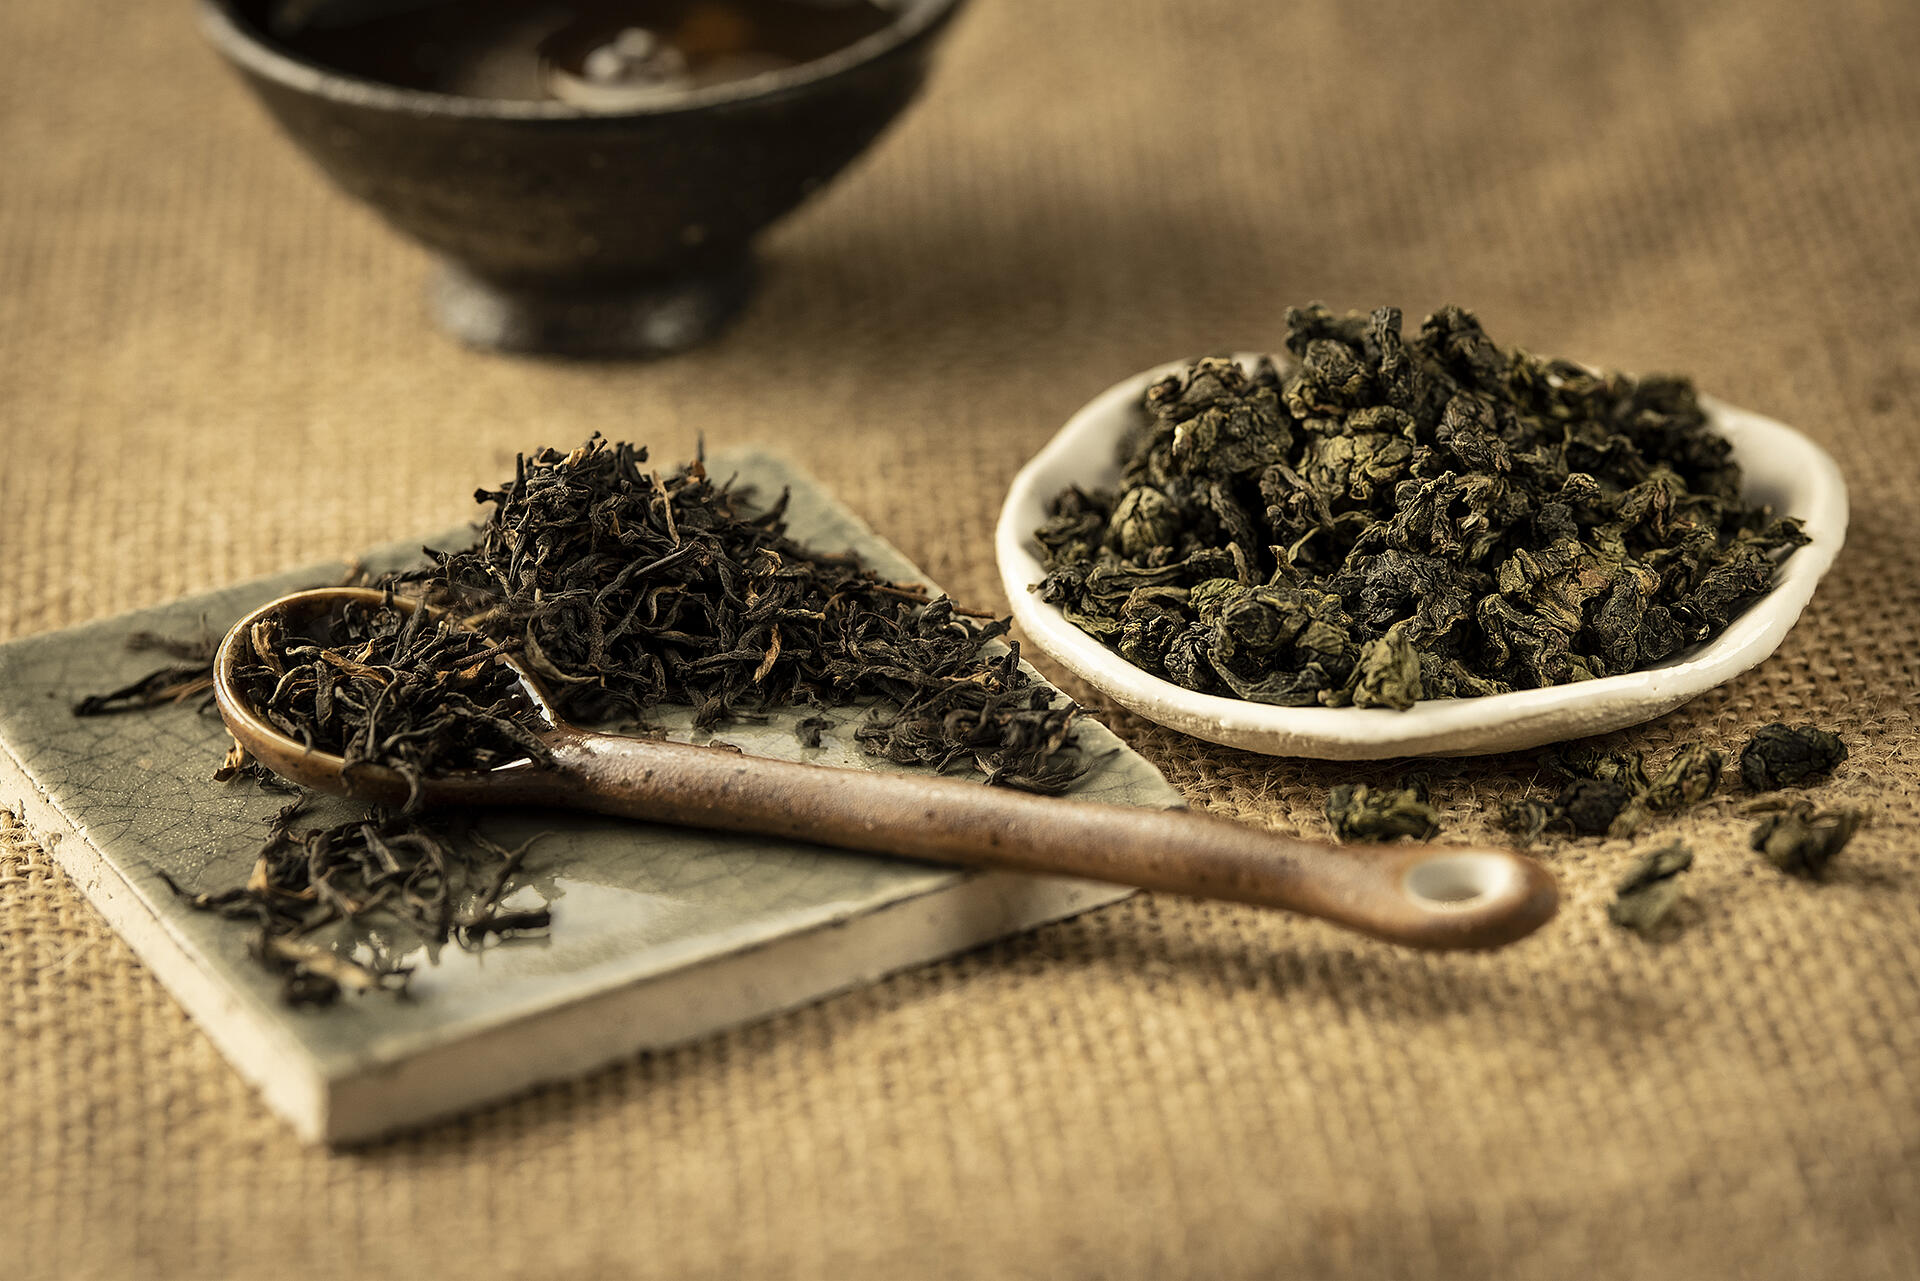 Creano "ErblühTee" Geschenkset Grüner Tee und Glaskanne, 0,5 l